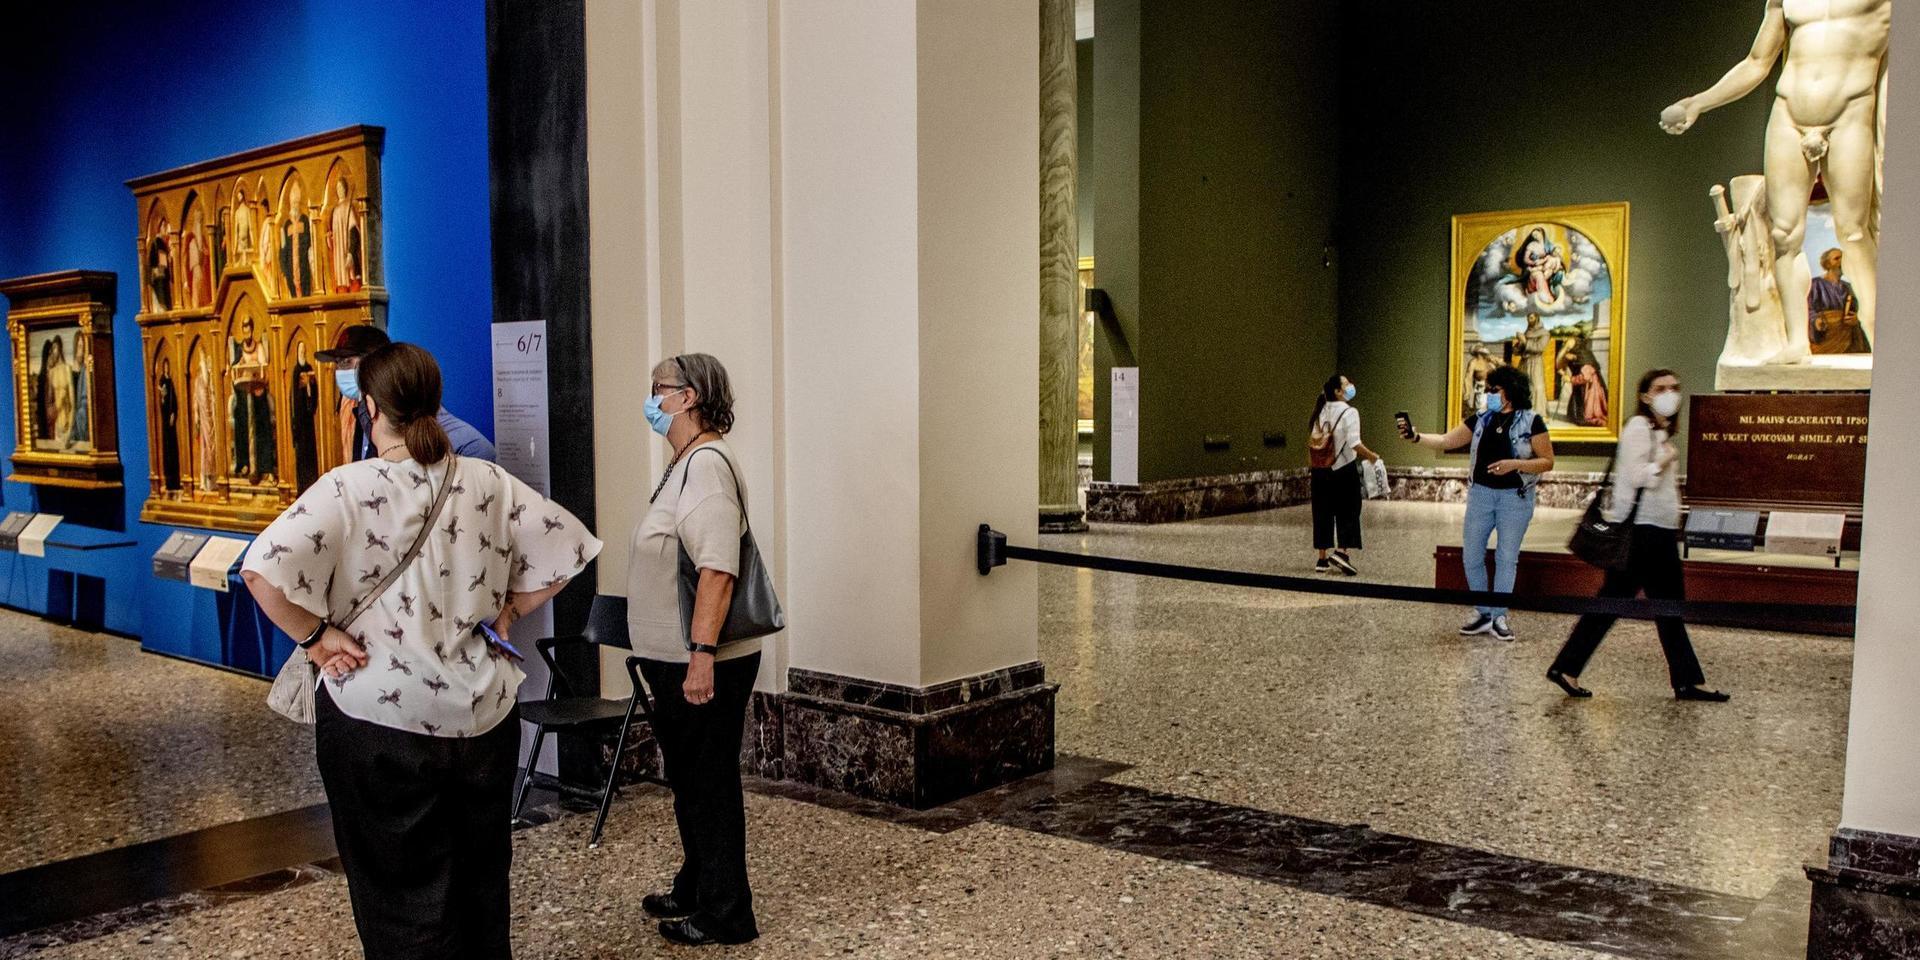 På Milanos konstmuseum Brera återfinns bara italienska besökare. Även de måste följa strikta regler för att minska risken för smittspridning.